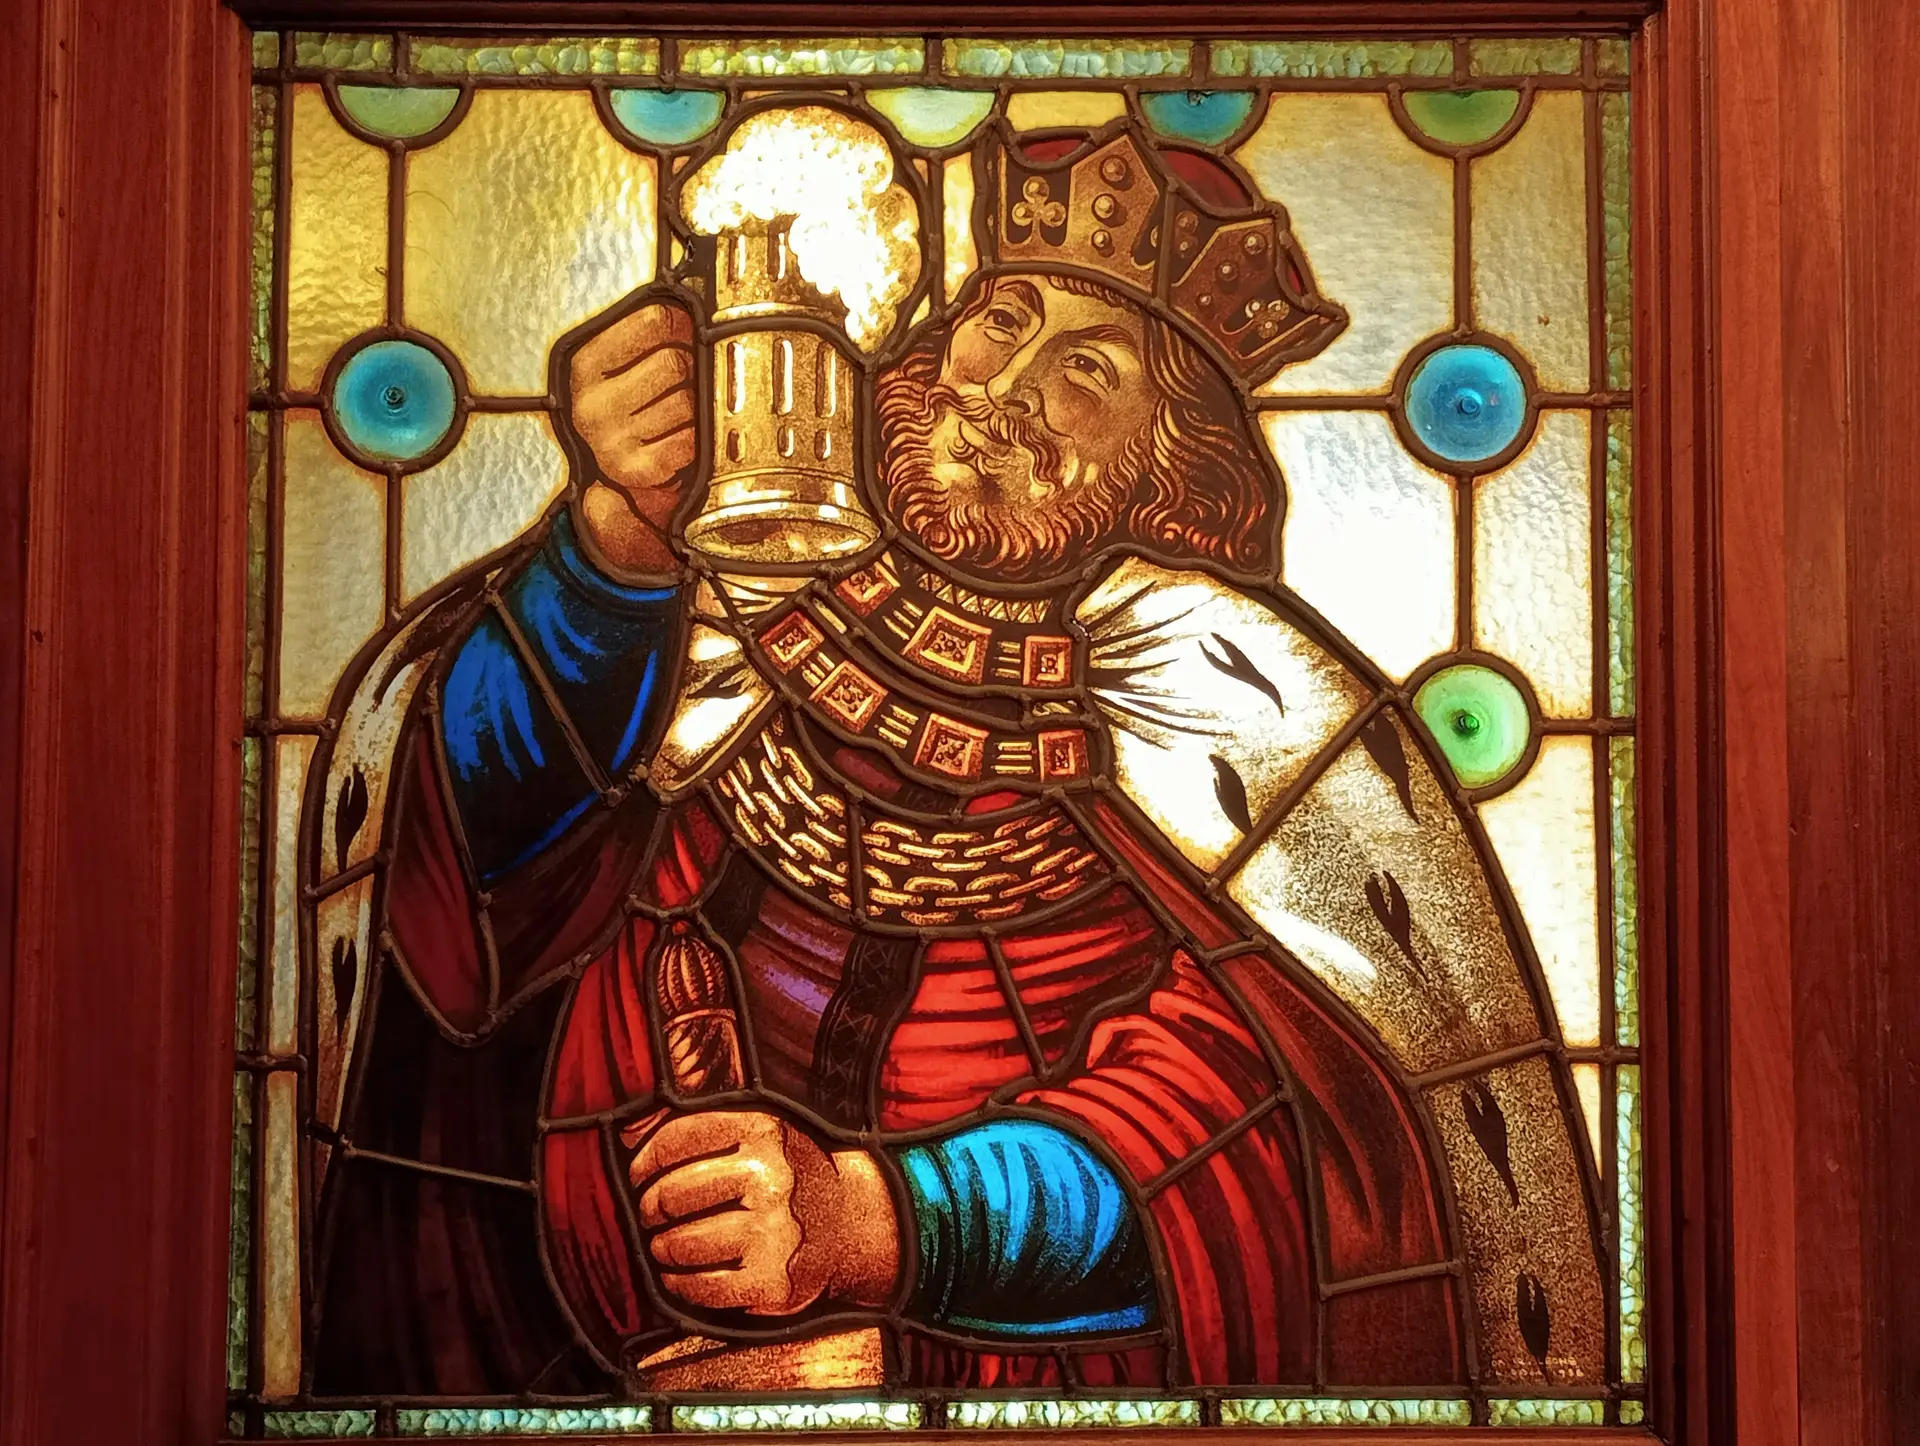 Vitral com o mítico rei Gambrinus, patrono dos cervejeiros